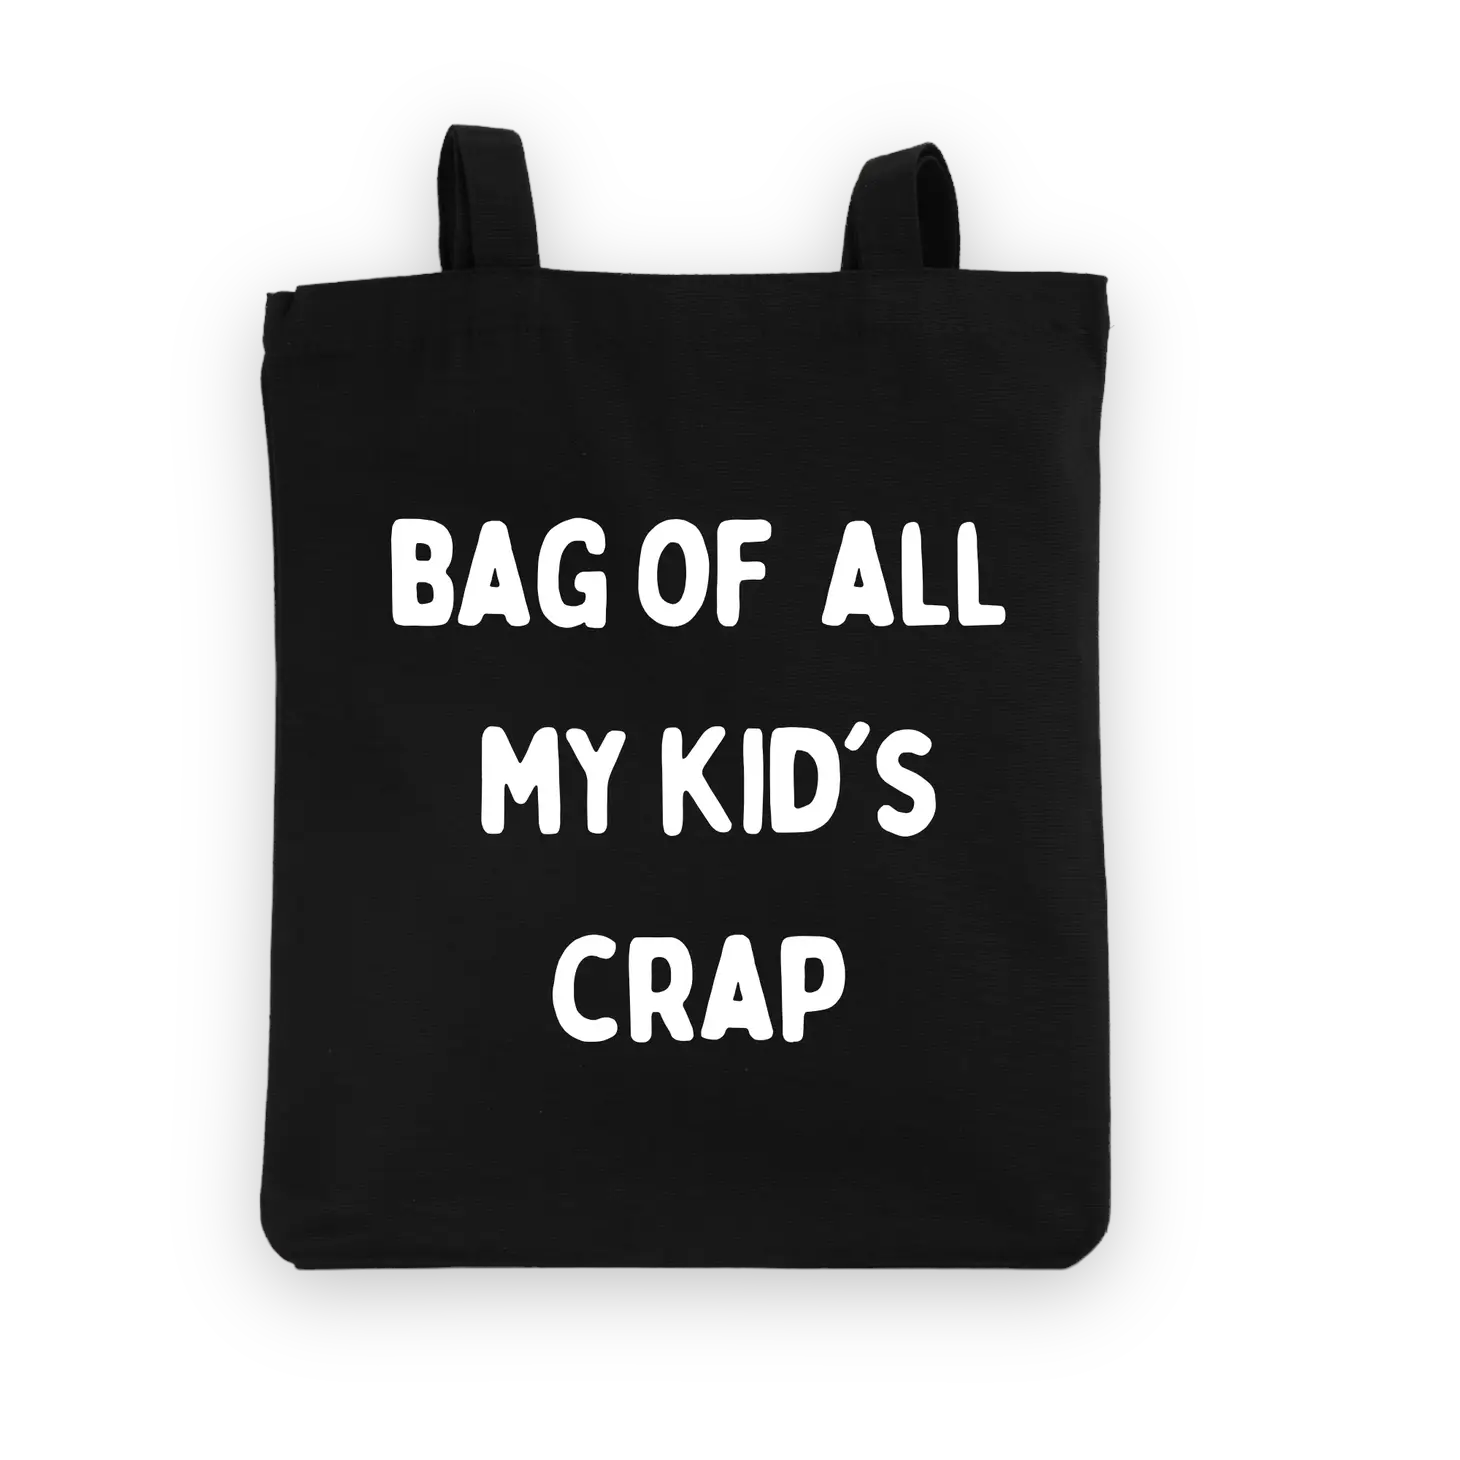 Draagtas met opschrift 'Bag of all my kid's crap', gemaakt van 100% katoen voor de coolste mama's